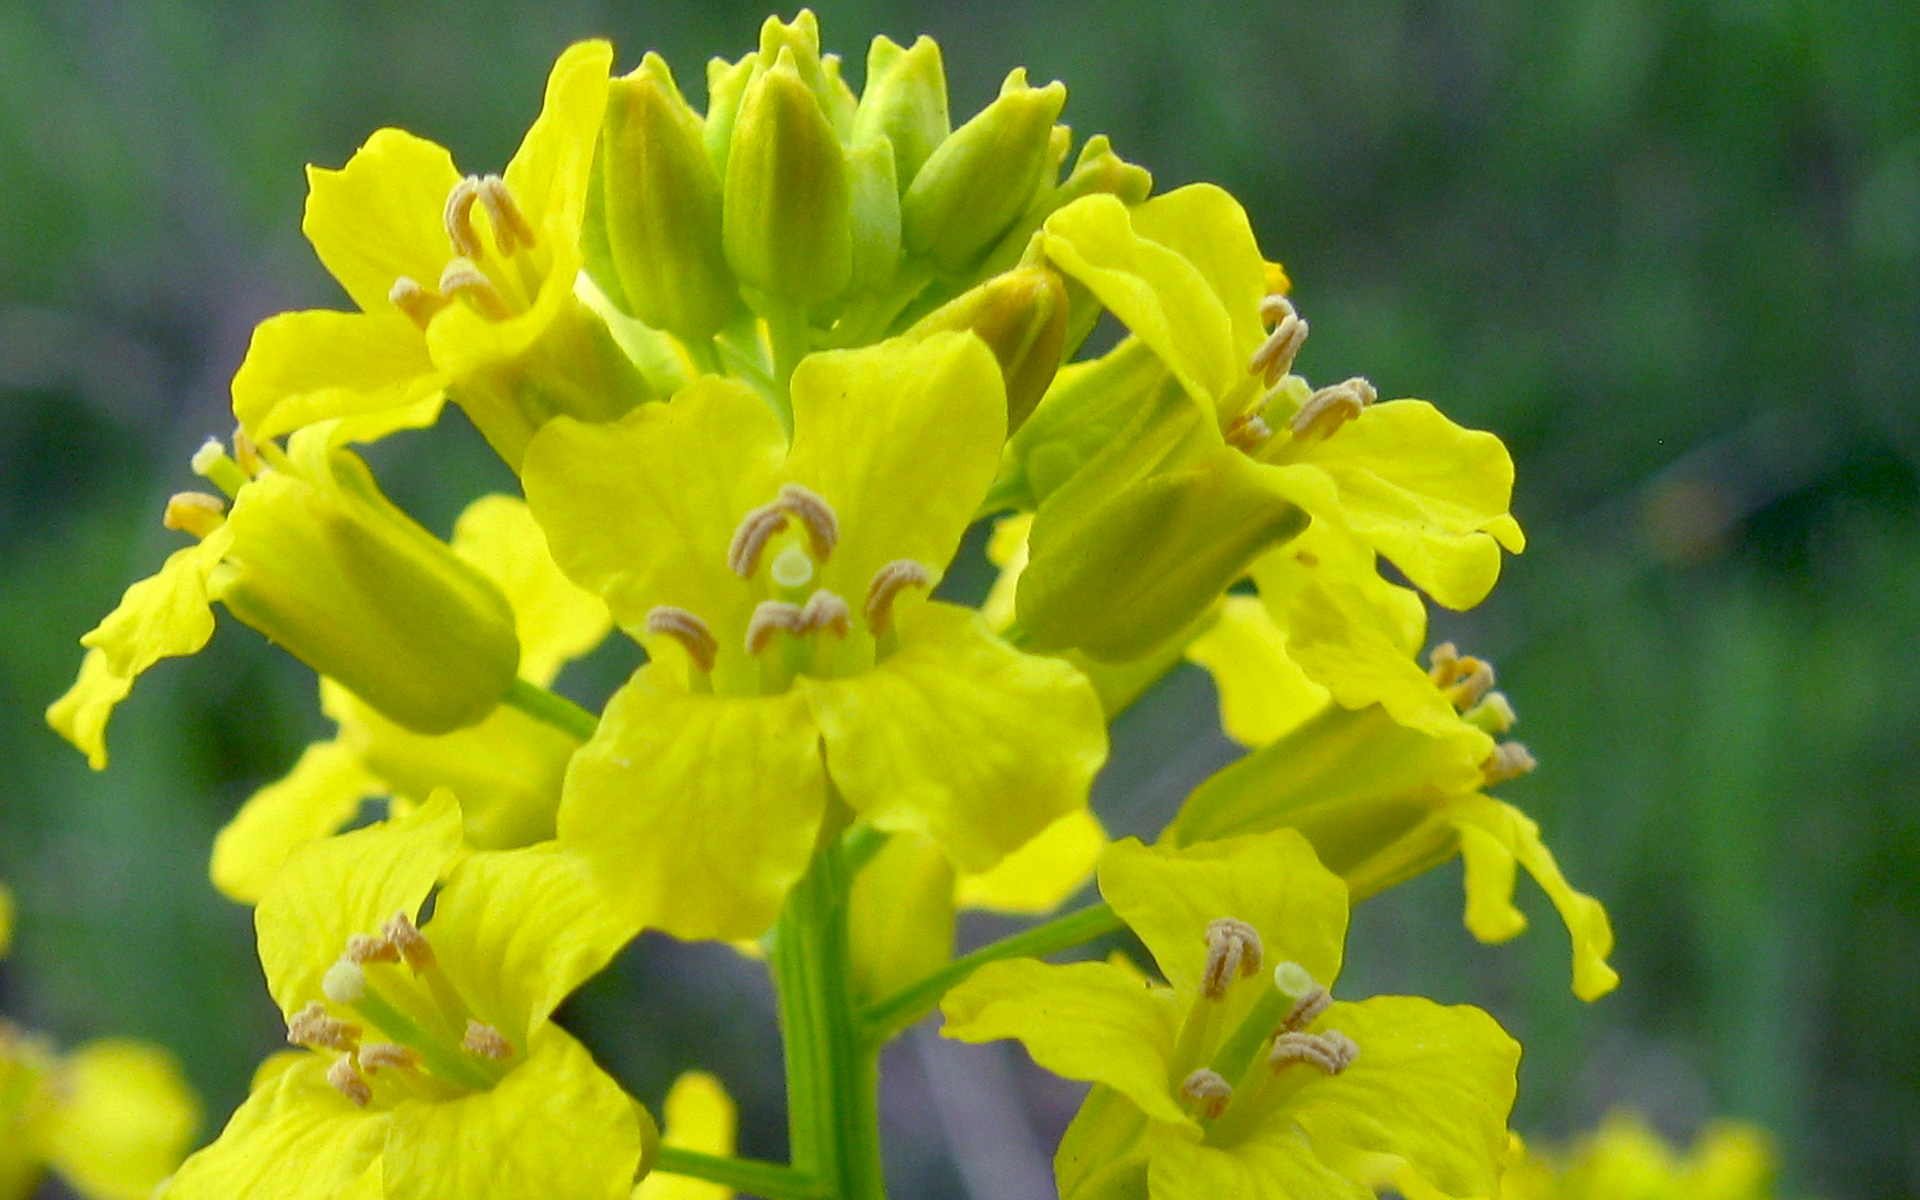 Fleur de barbarée commune. Crédit : Benet2006, Flickr